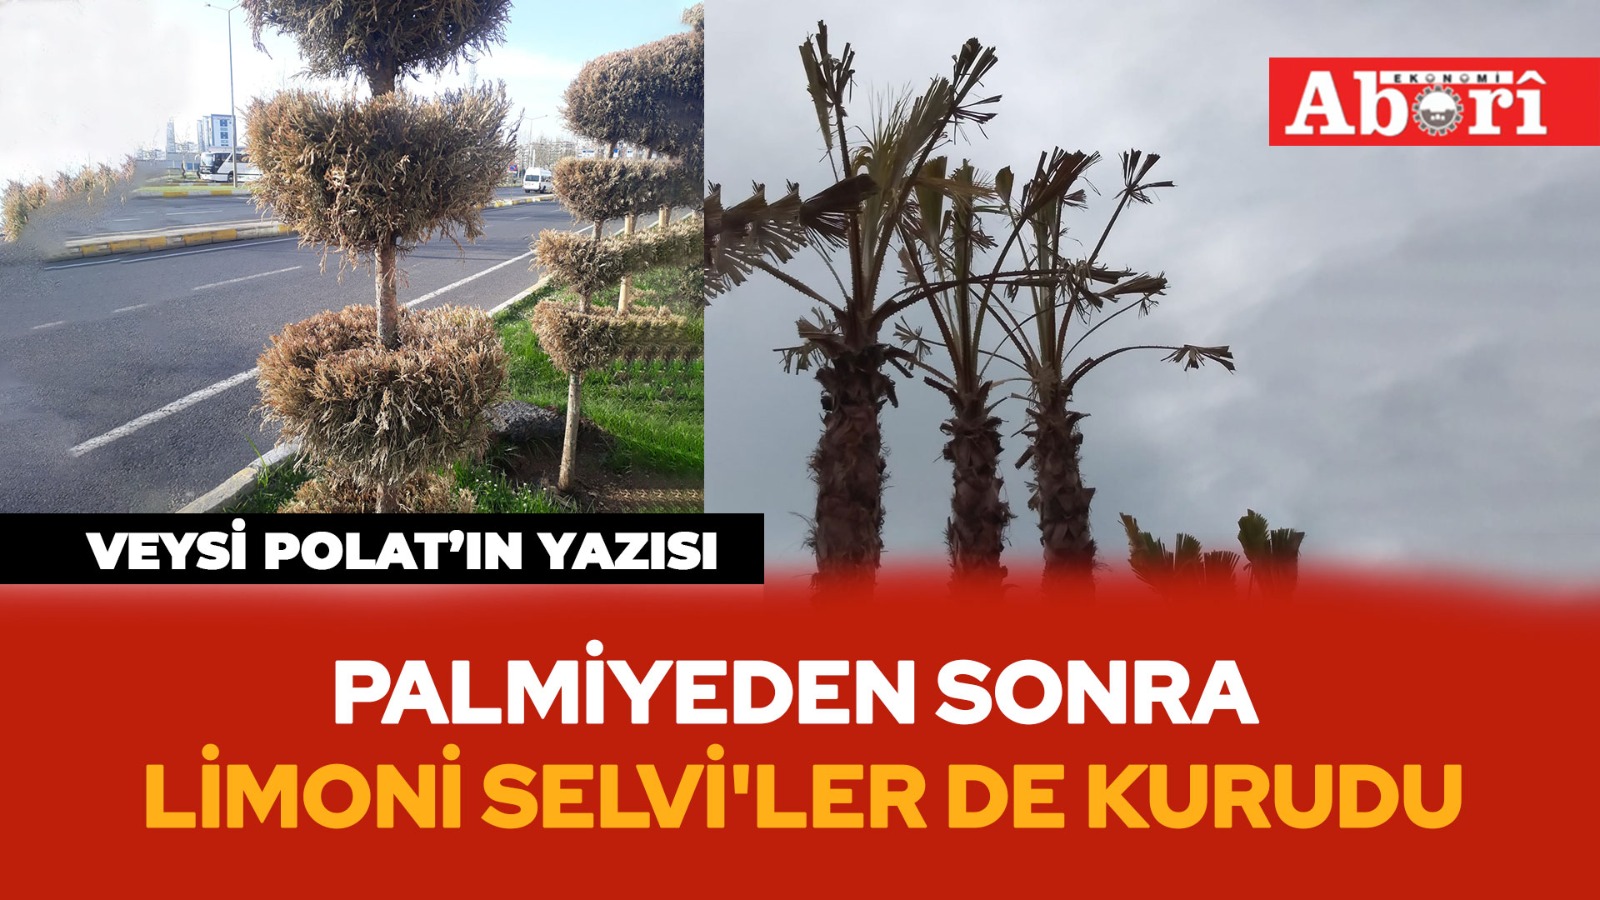 Diyarbakır’da iklime uygun olmayan ağaçlar kuruyor